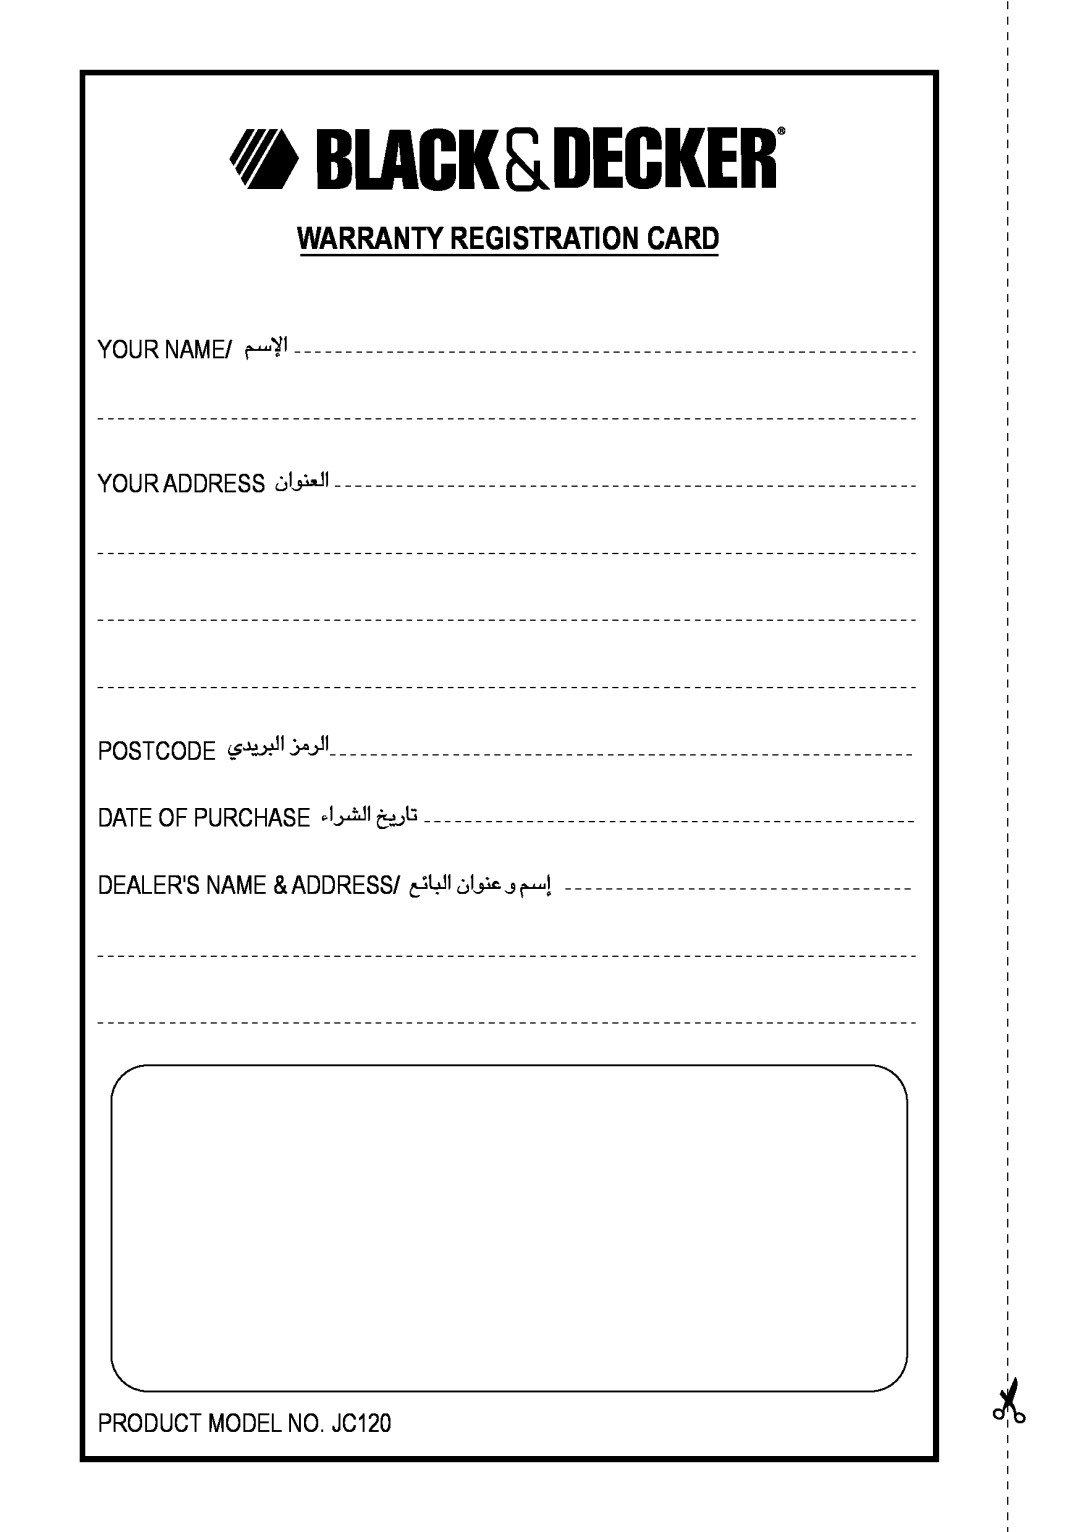 Black & Decker JC120 manual Warranty Registration Card 